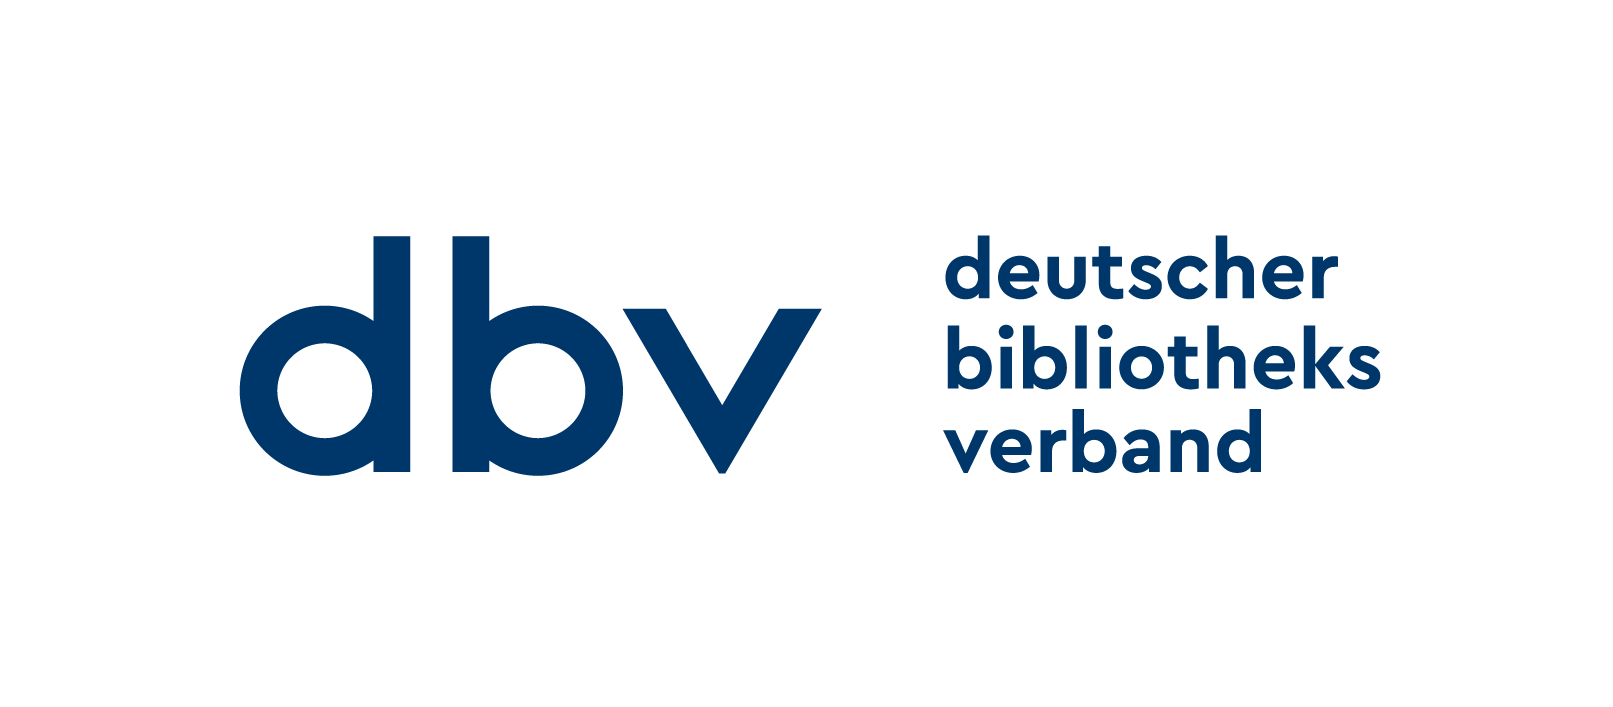 Deutscher Bibliotheksverband (dbv) 